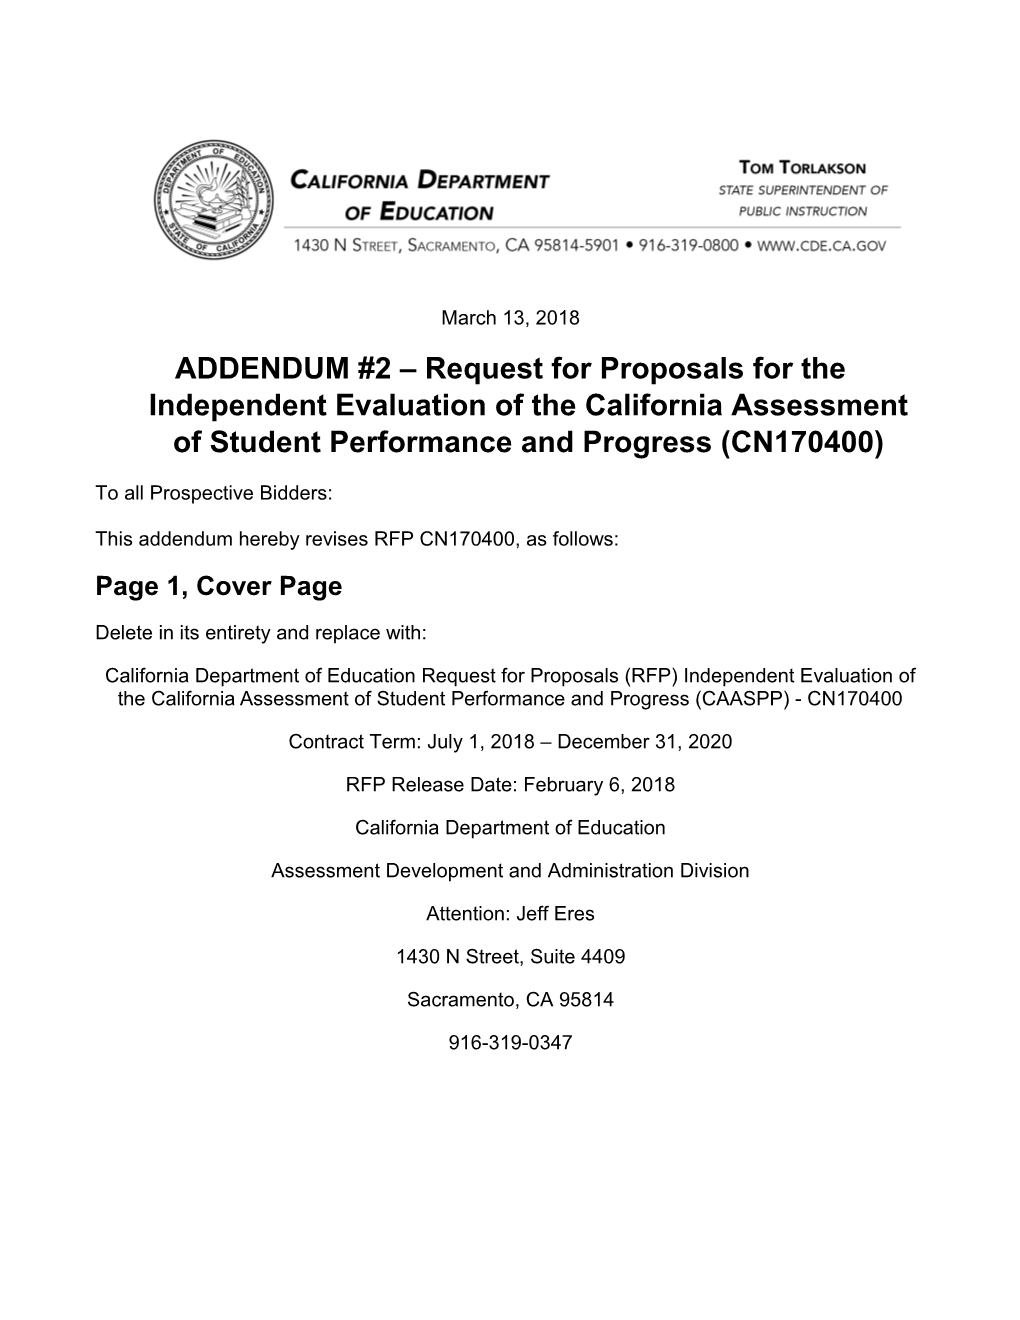 Att02-18: CAASPP RFP Addendum 2 (CA Dept of Education)